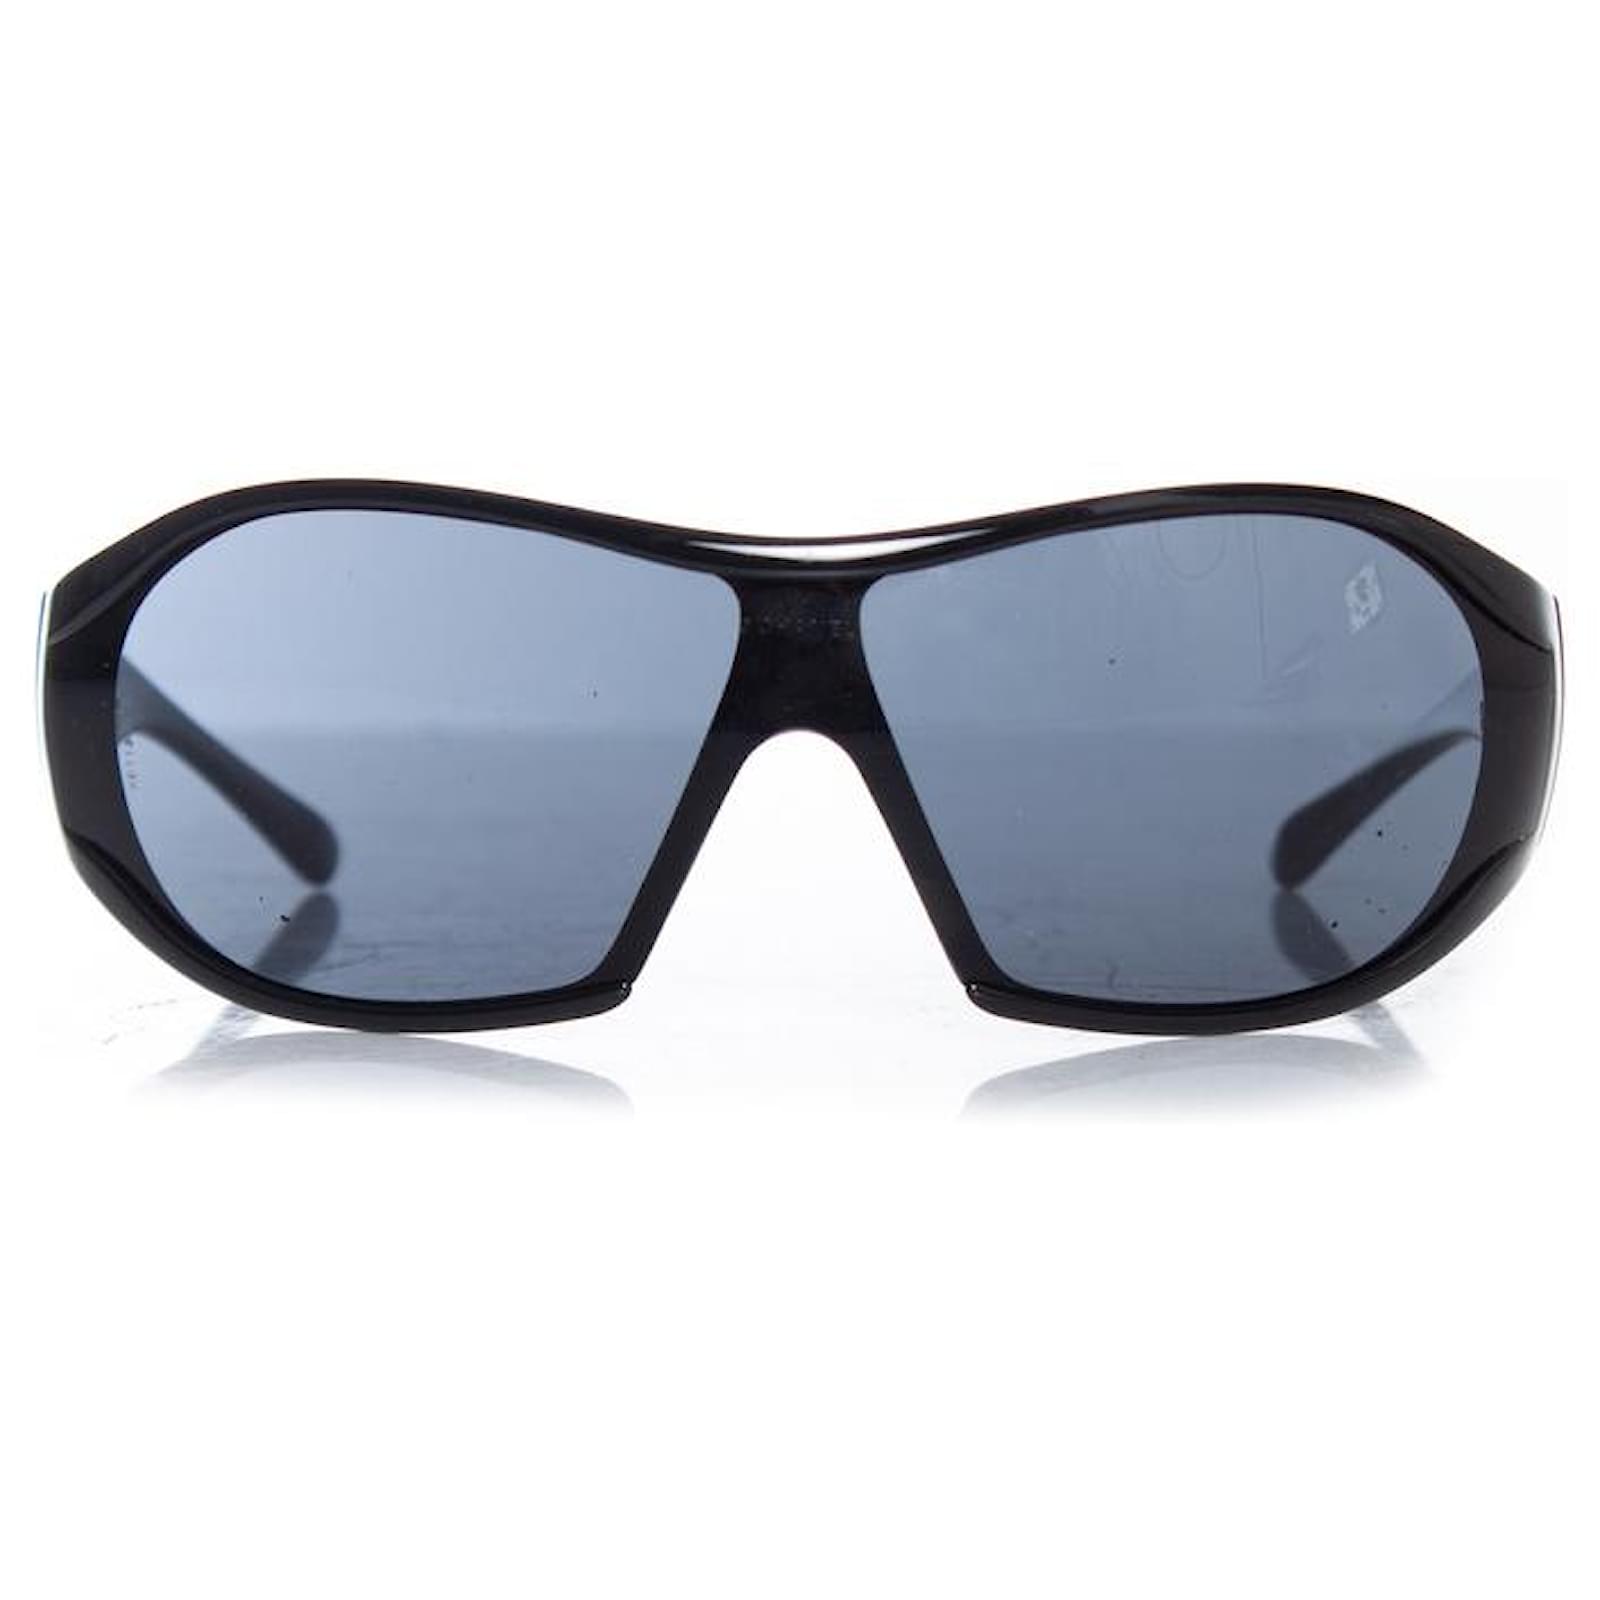 Black Shield Chanel Sunglasses